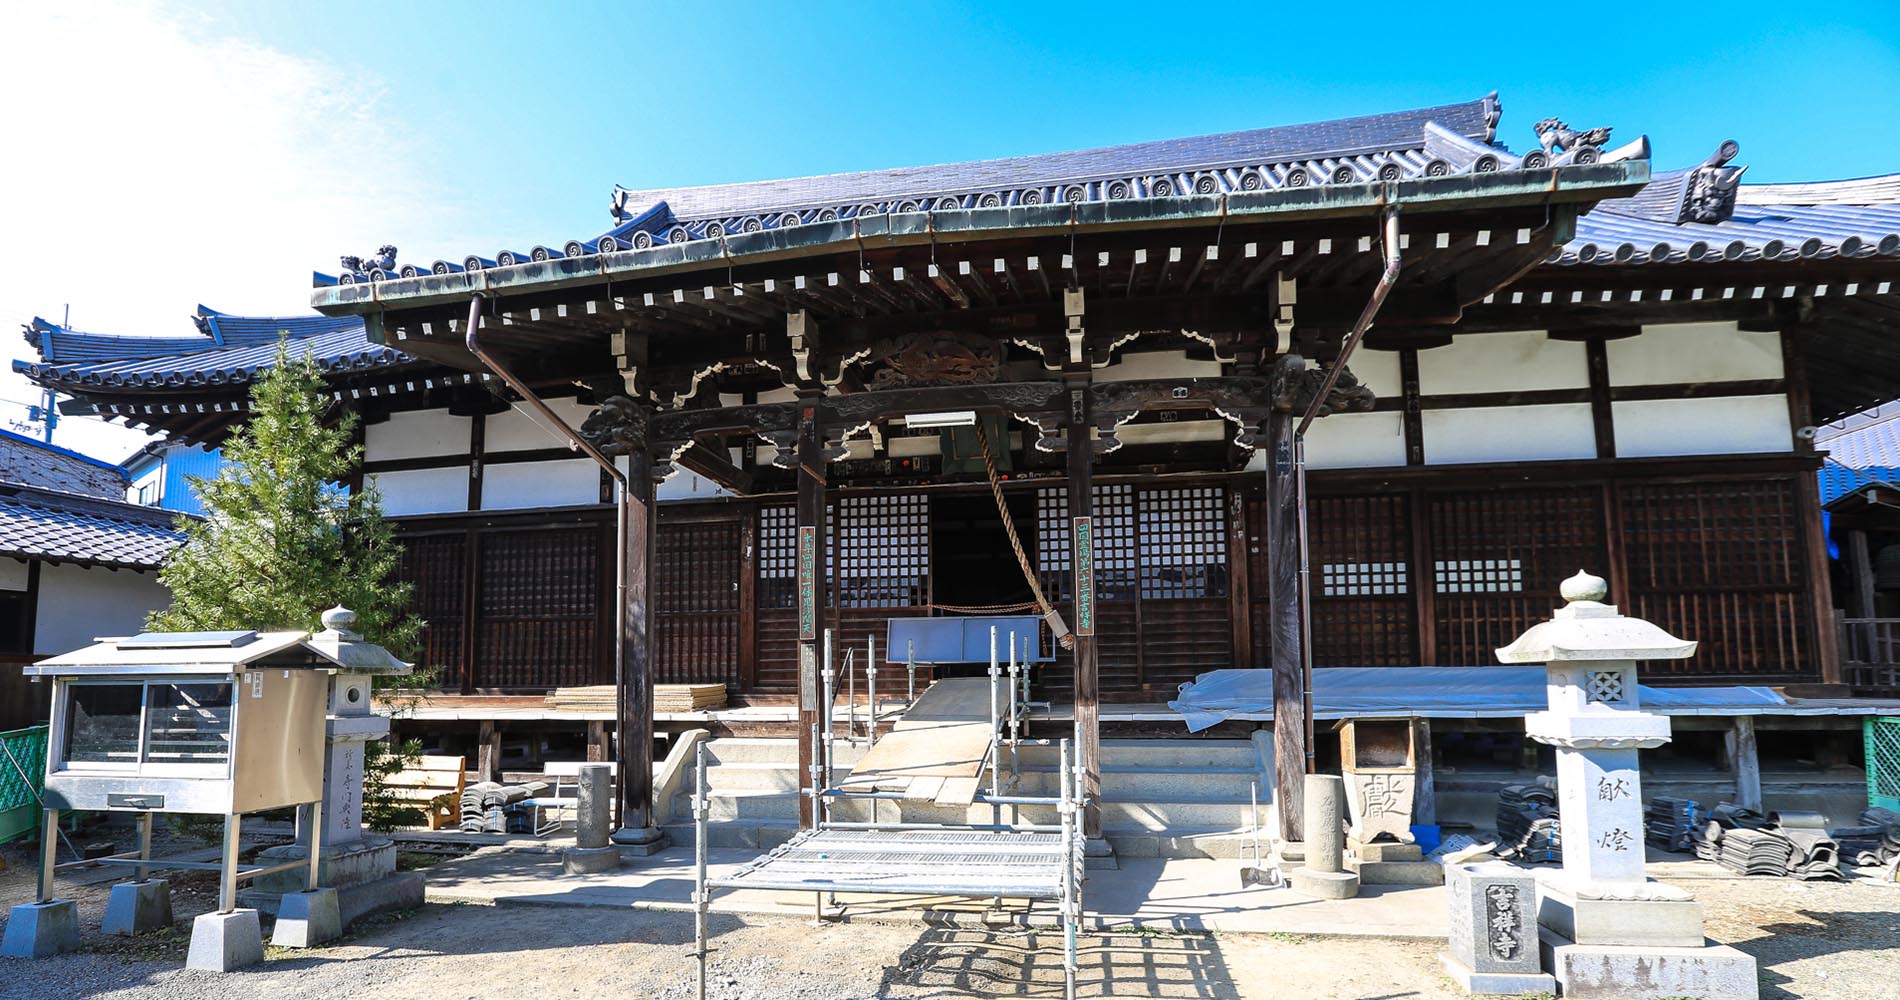 Temple principal de Kichijoji, en réparation